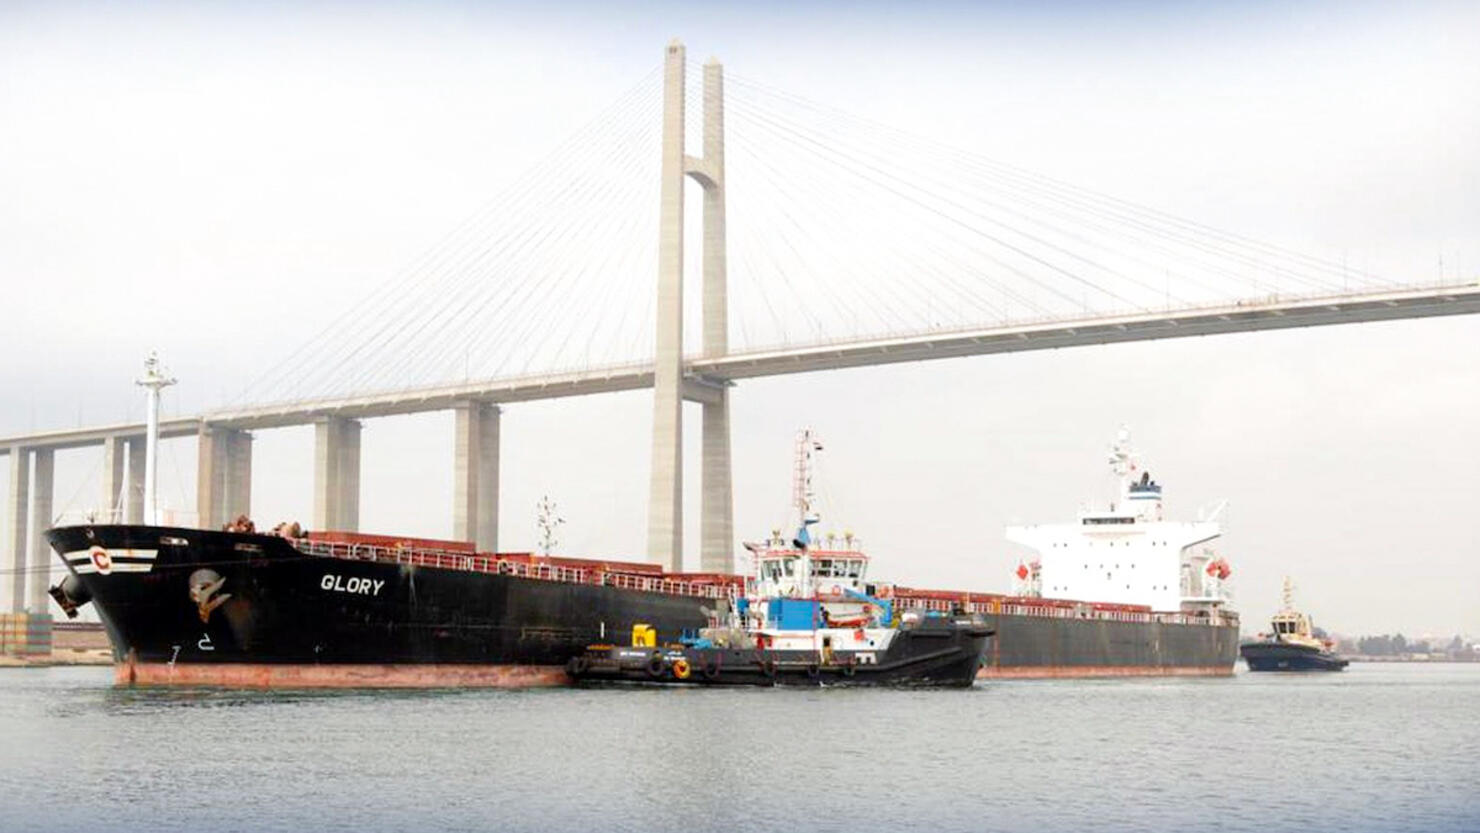 Ship runs aground in Suez Canal